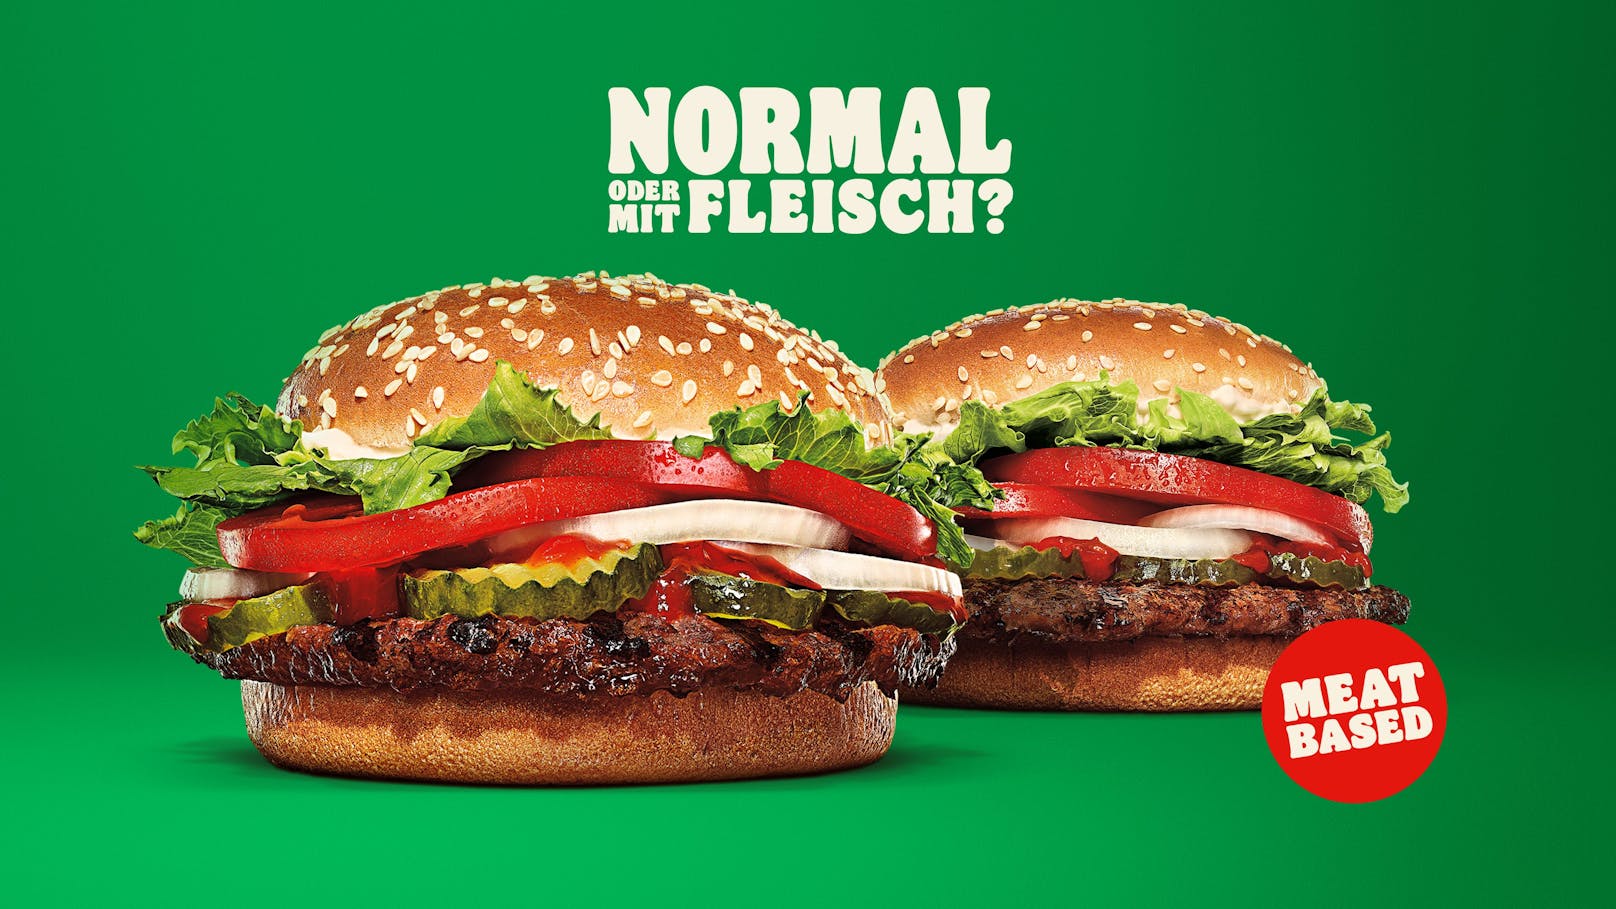 Wer in Zukunft sein Lieblingsgericht bei Burger King mit Fleisch will, muss den Wunsch extra äußern.